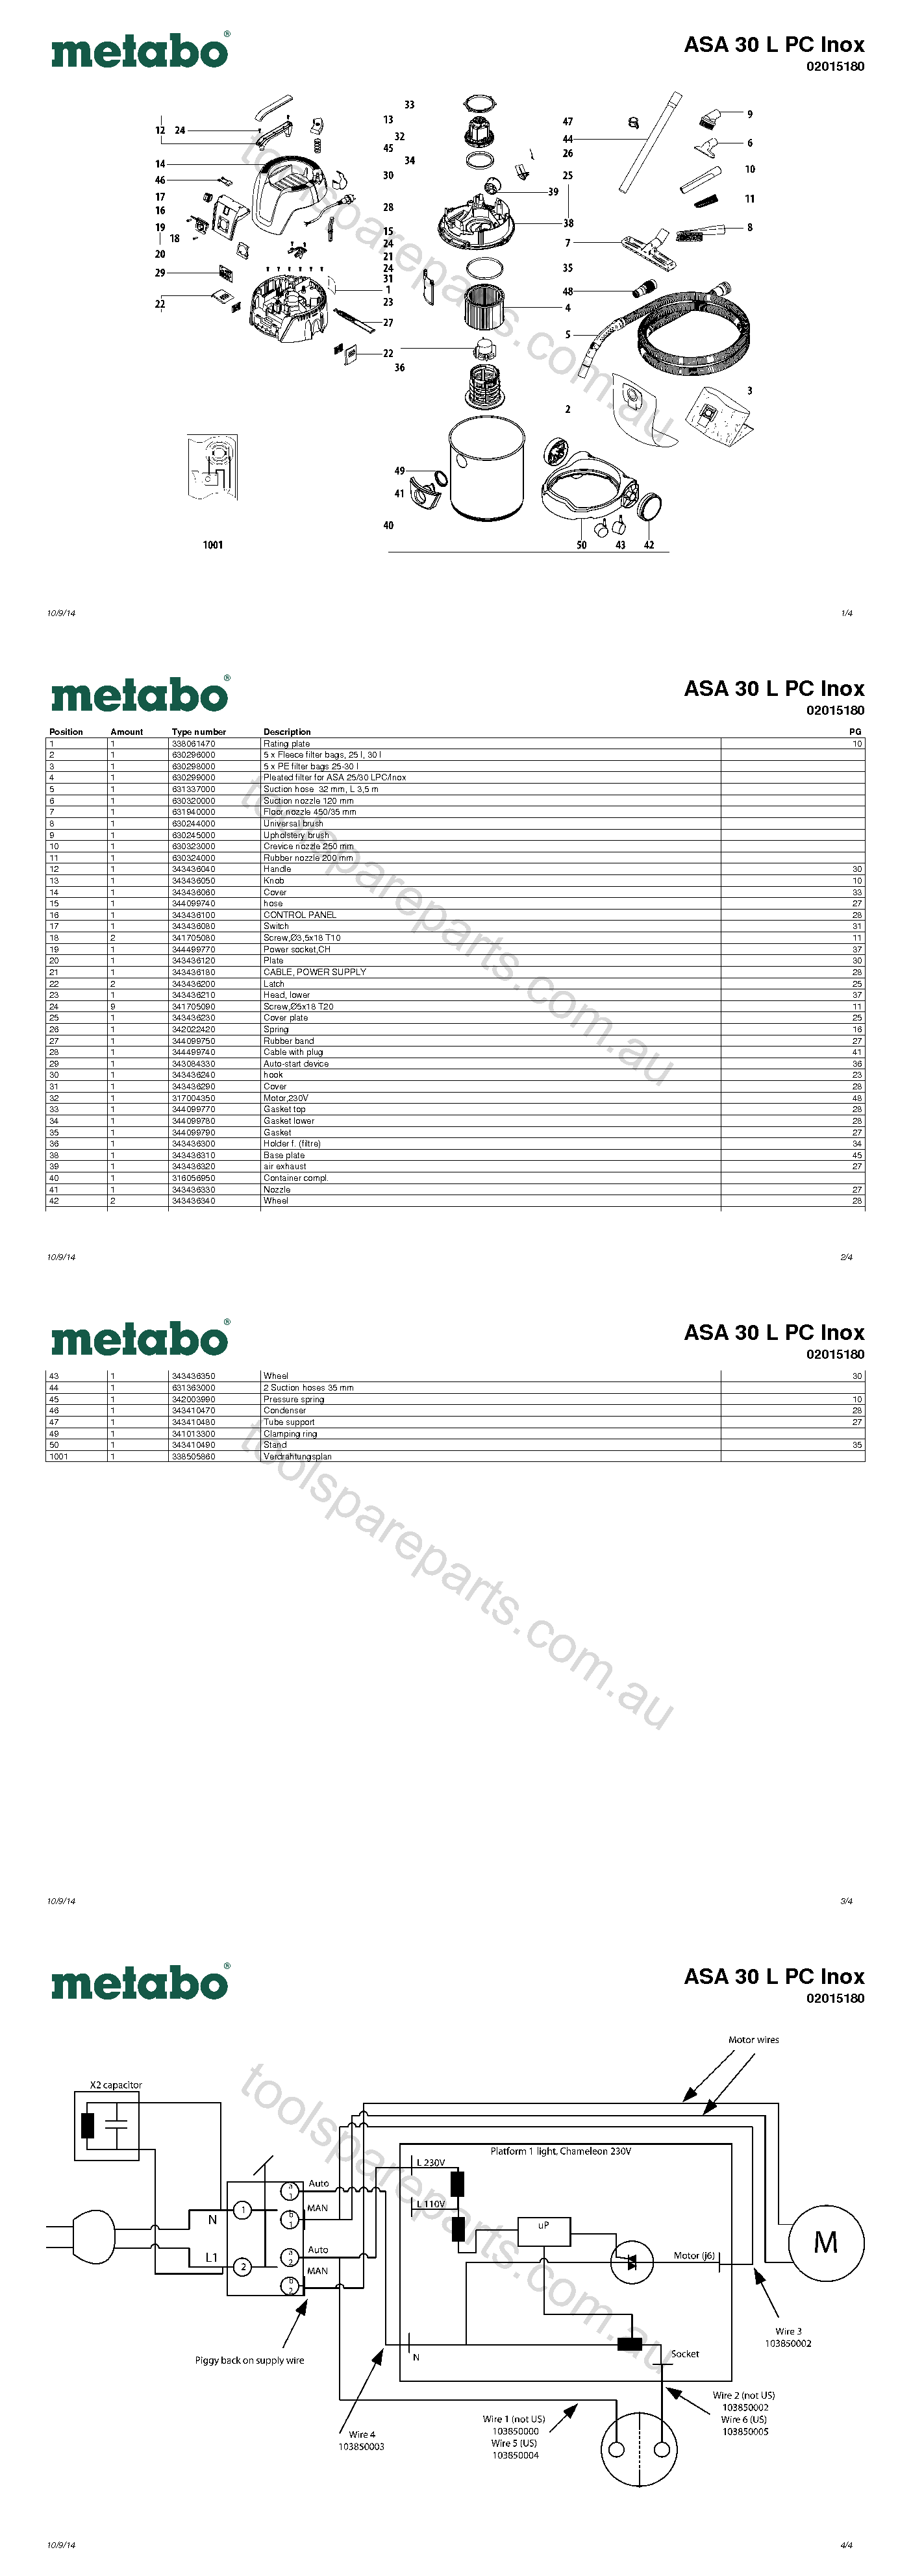 Metabo ASA 30 L PC Inox 02015180  Diagram 1